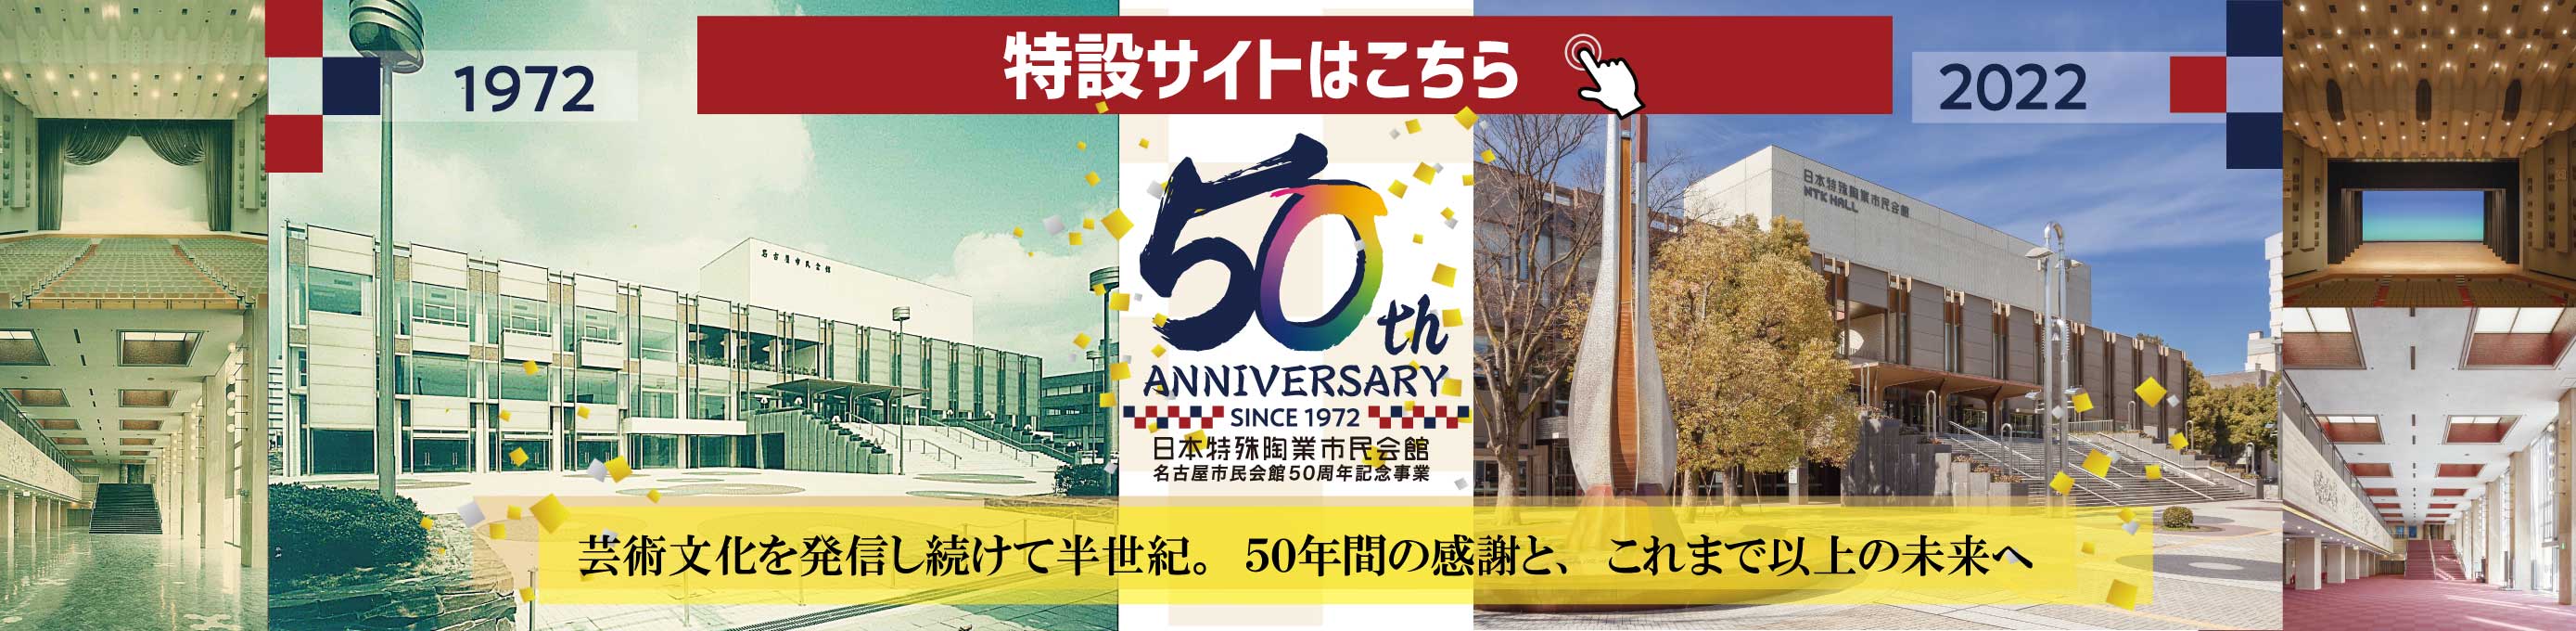 市民会館50周年記念サイト